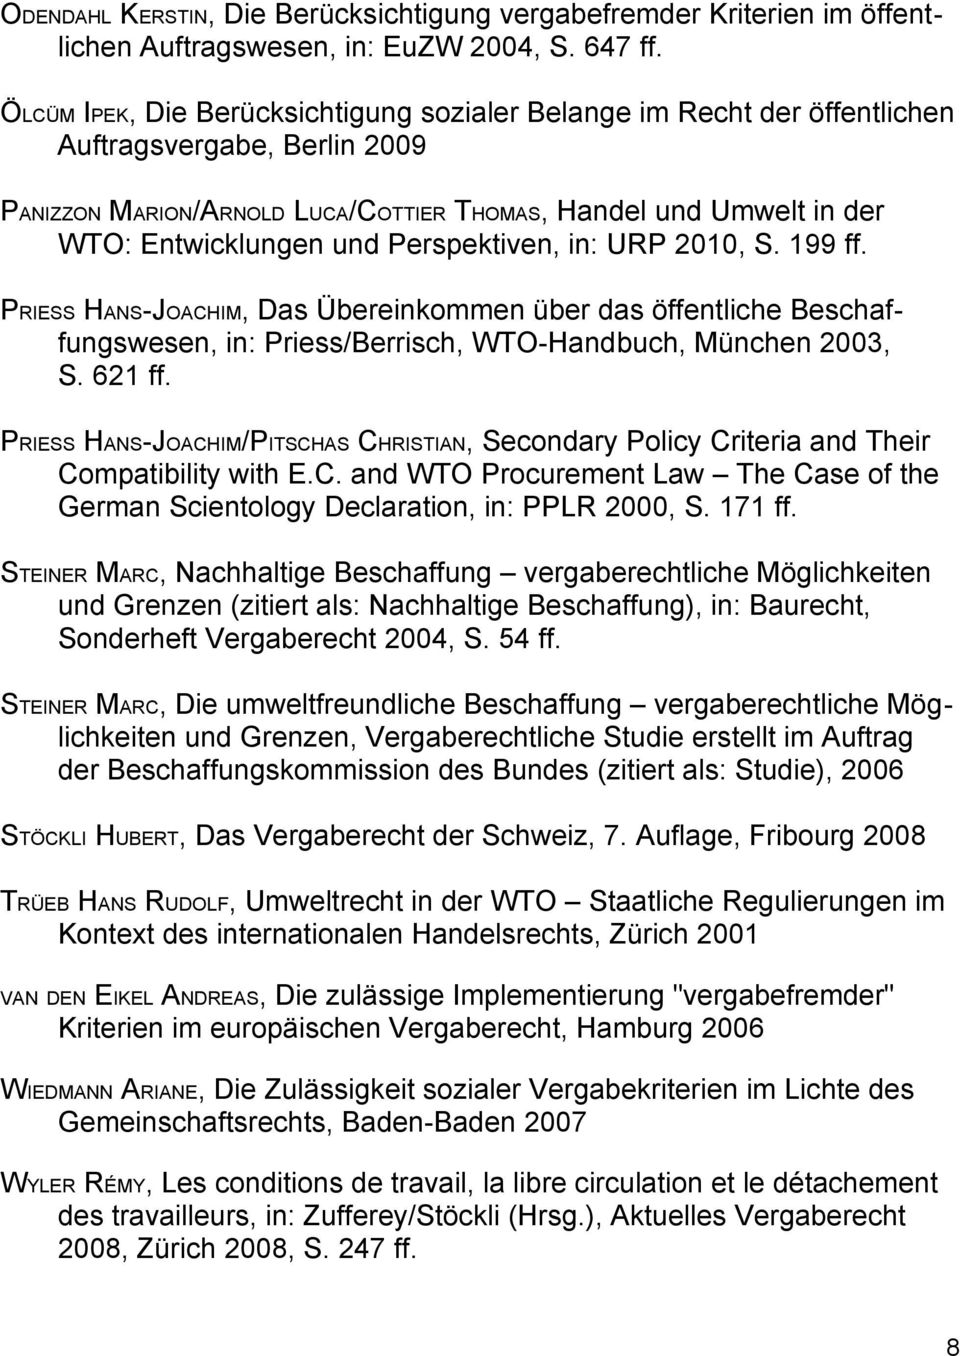 Perspektiven, in: URP 2010, S. 199 ff. PRIESS HANS-JOACHIM, Das Übereinkommen über das öffentliche Beschaffungswesen, in: Priess/Berrisch, WTO-Handbuch, München 2003, S. 621 ff.